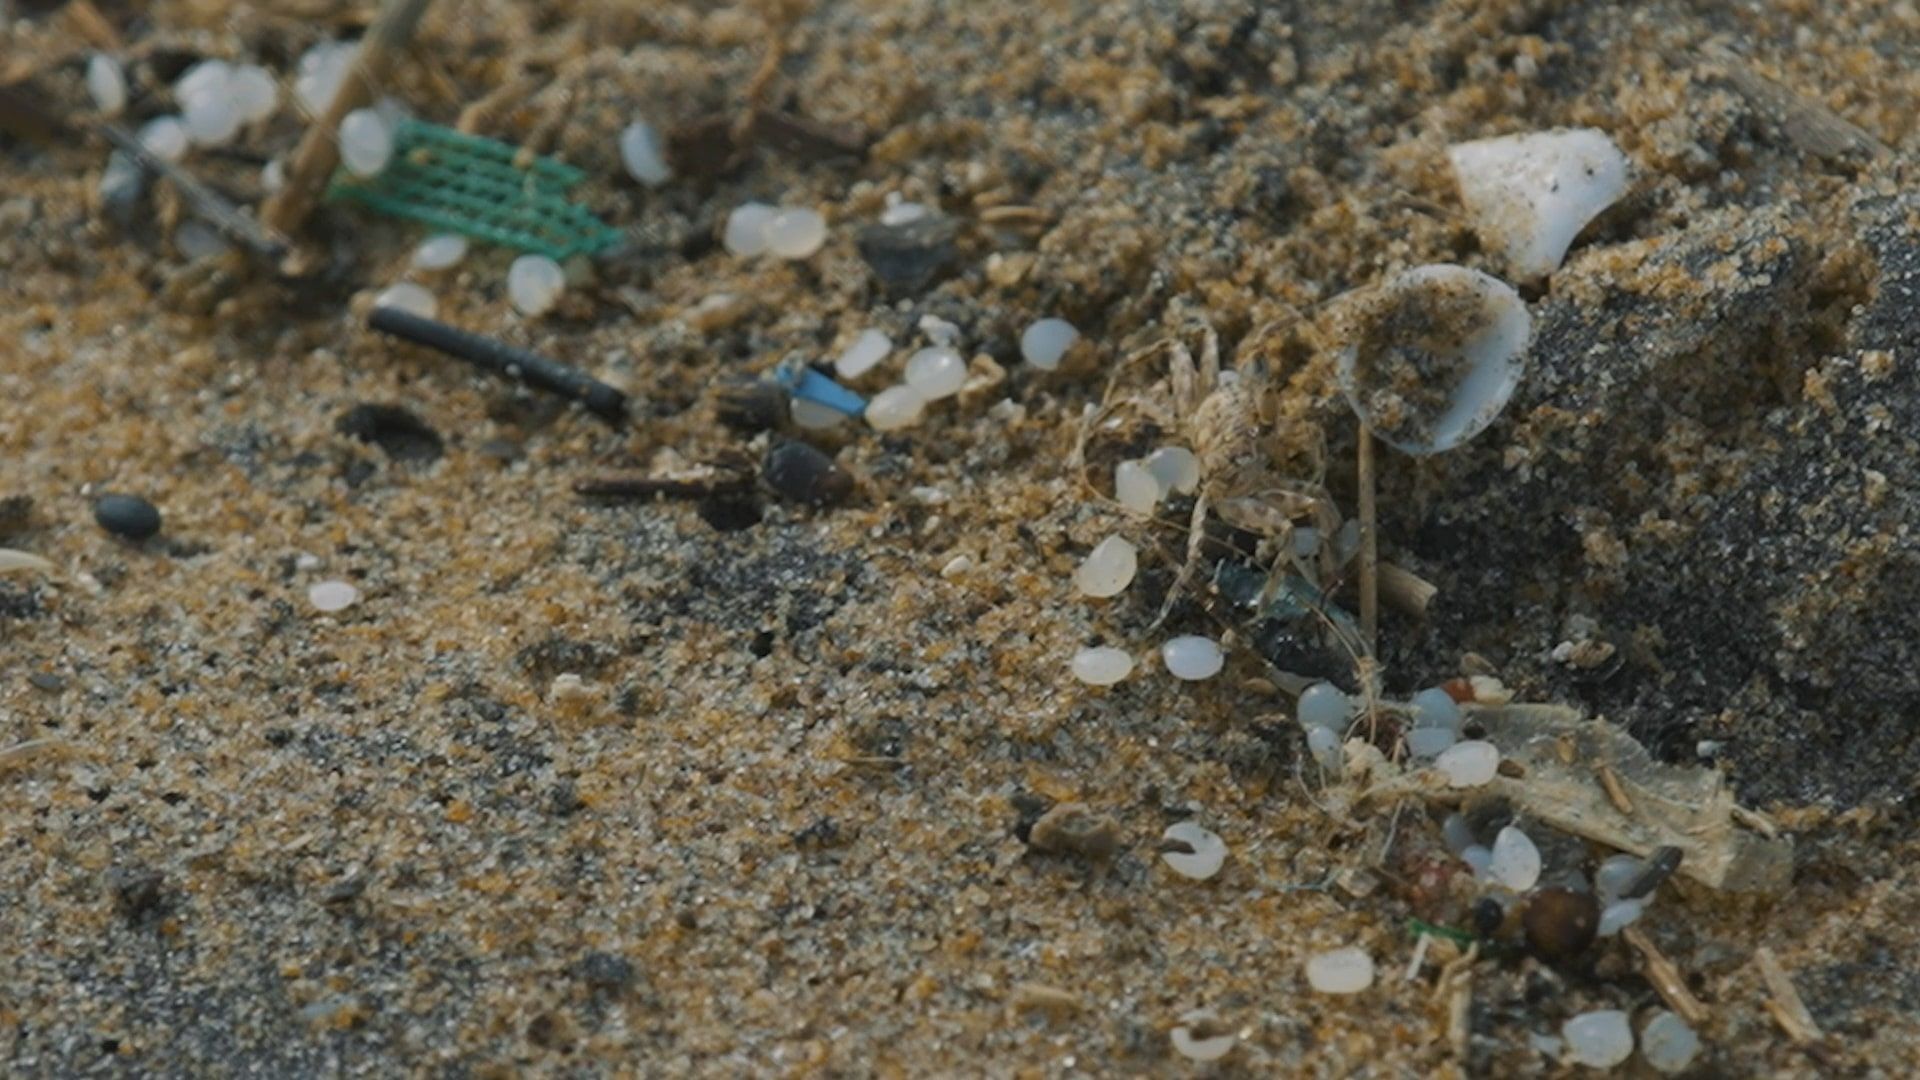 Gránulos de plástico (nurdles) en la playa: Bolas de tamaño milimétrico difíciles de recoger.